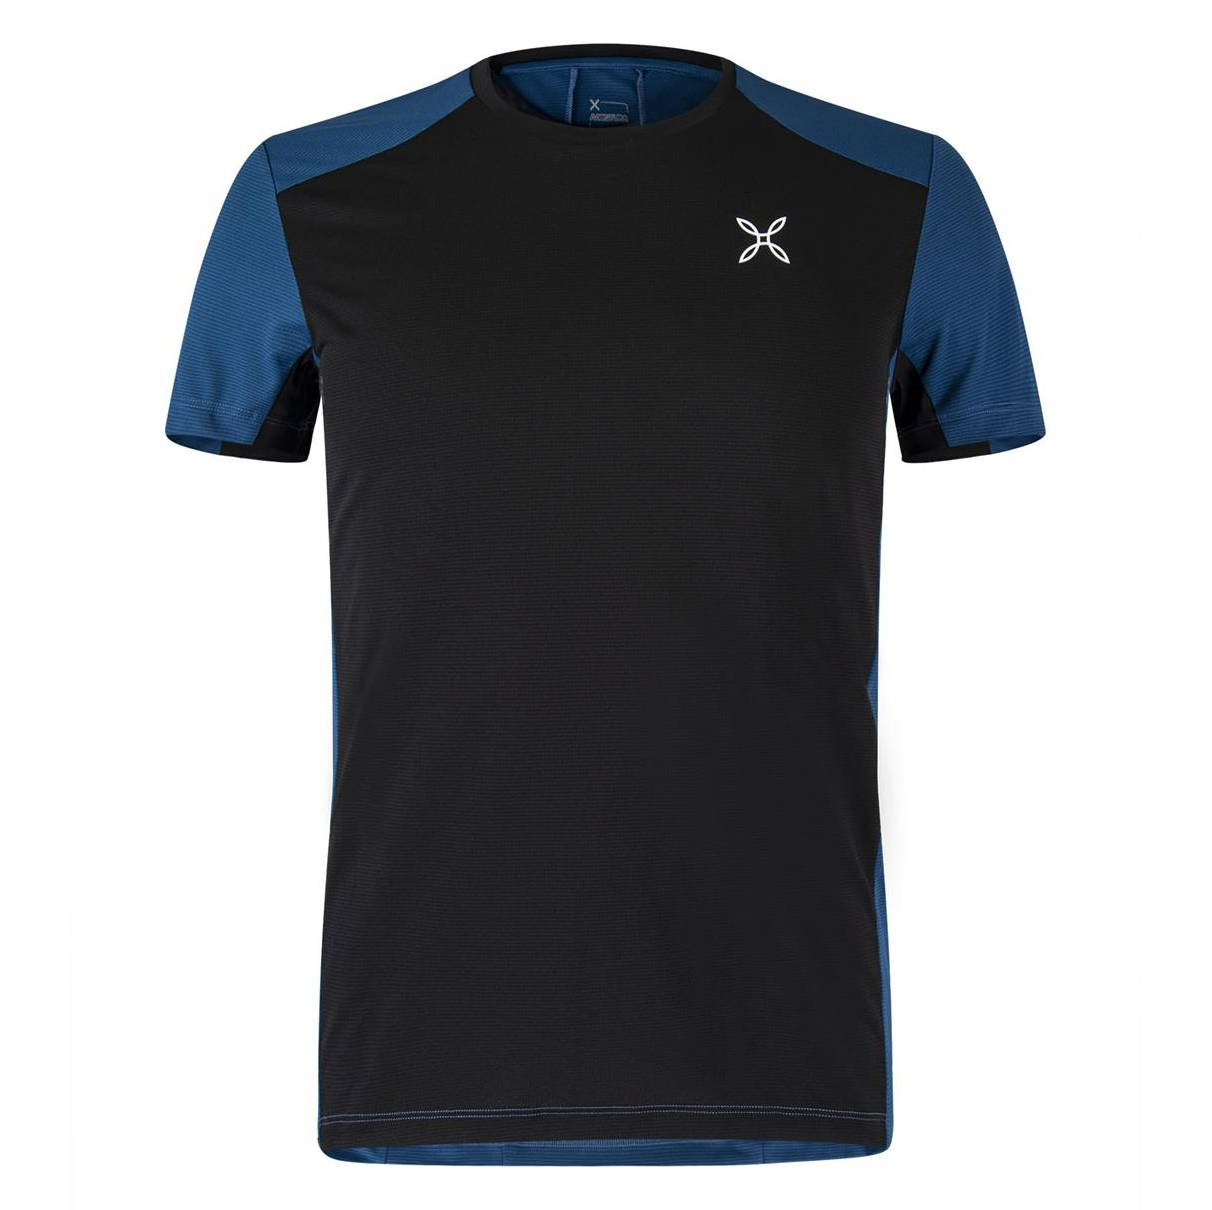 Produktbild von Montura Angel Fire T-Shirt Herren - schwarz/deep blue 9087